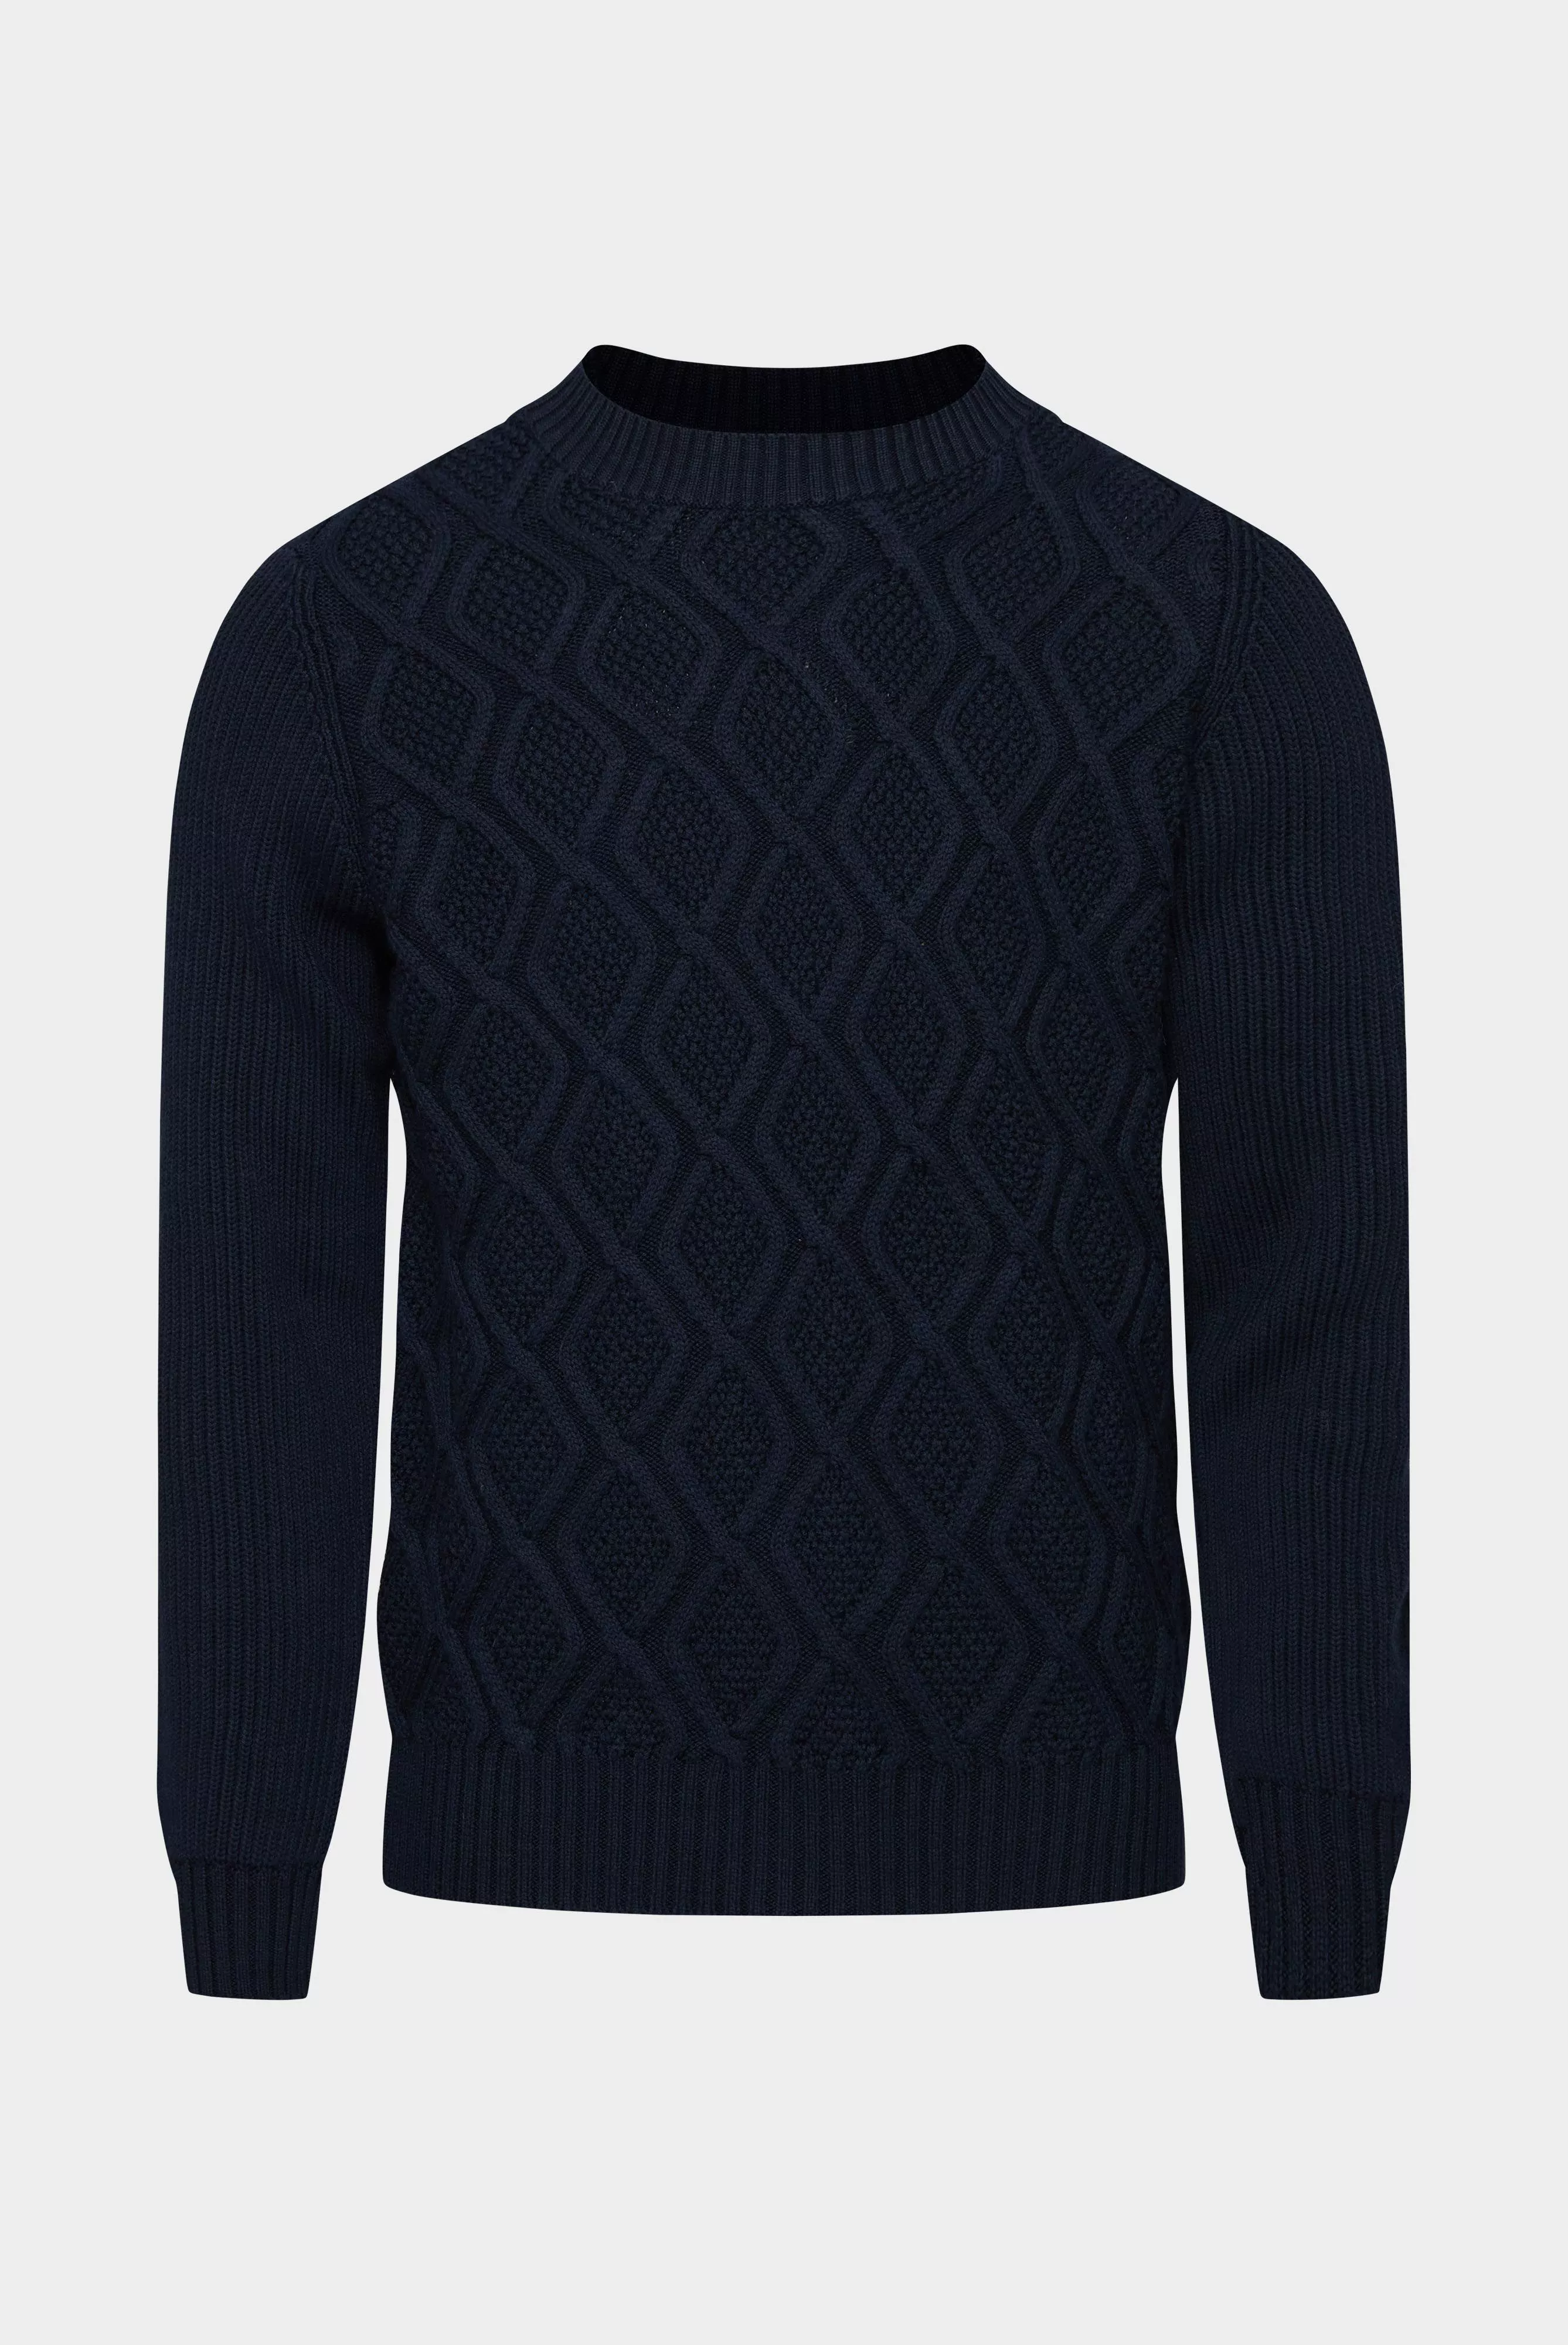 пуловер SINON темно-синий SINON_S00239_790 ,photo 1